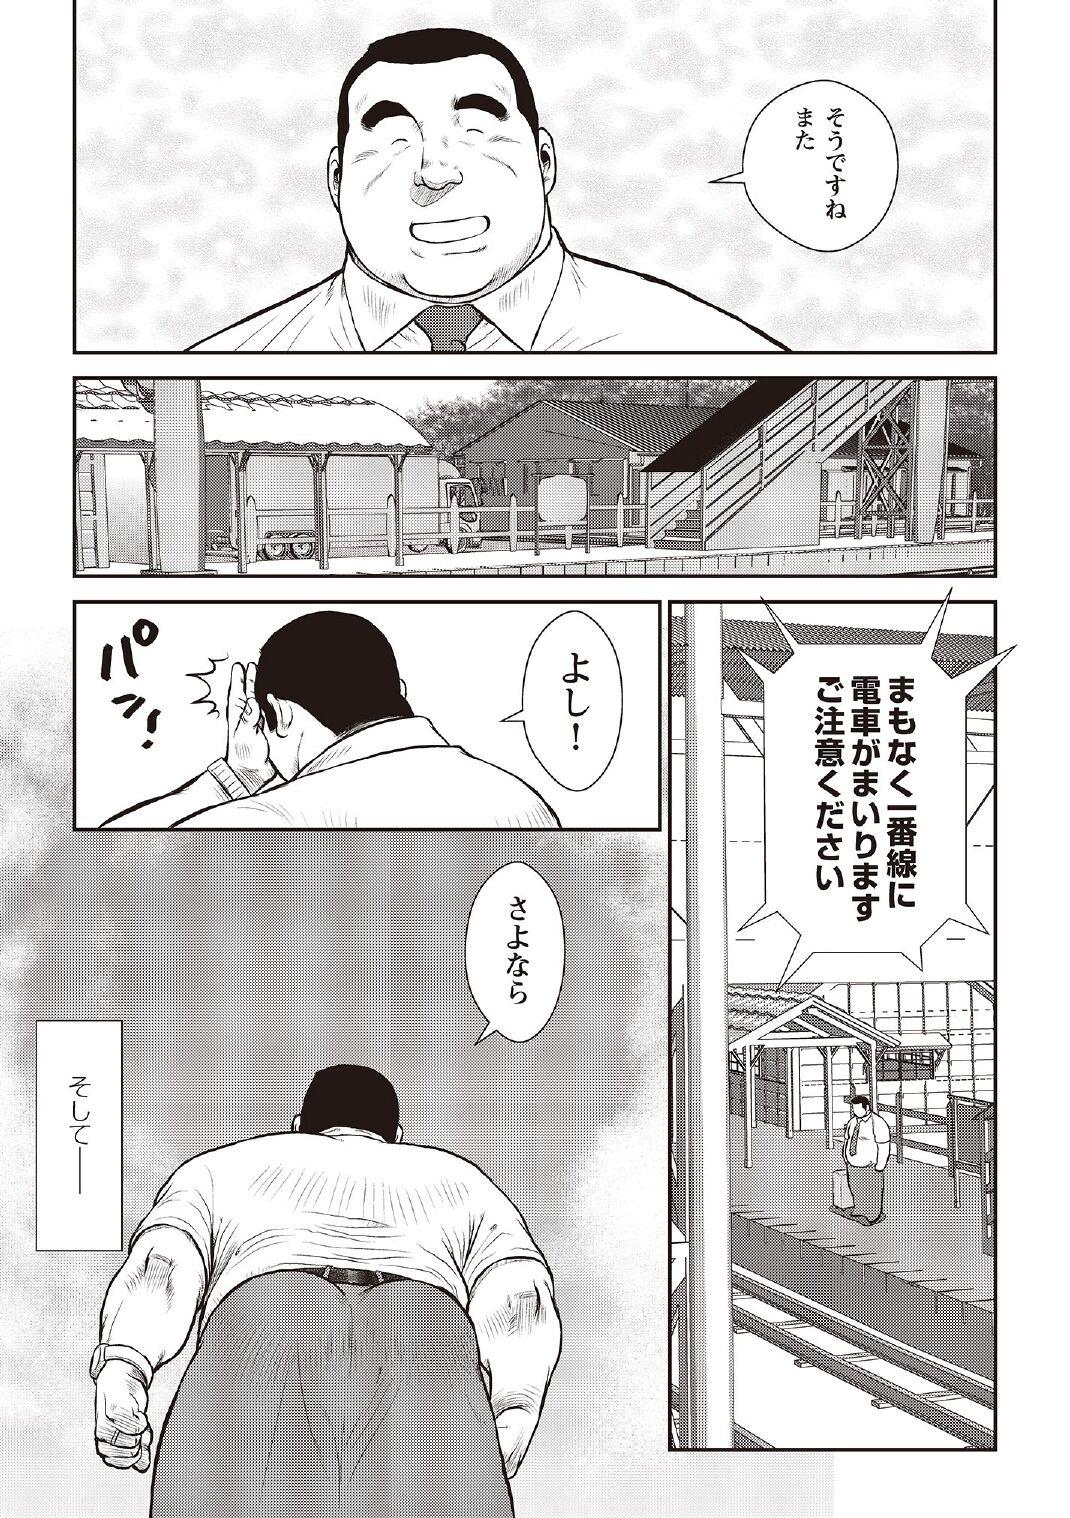 [Ebisubashi Seizou] Ebisubashi Seizou Tanpen Manga Shuu 2 Fuuun! Danshi Ryou [Bunsatsuban] PART 3 Bousou Hantou Taifuu Zensen Ch. 3 ~ Ch. 5 [Digital] 66